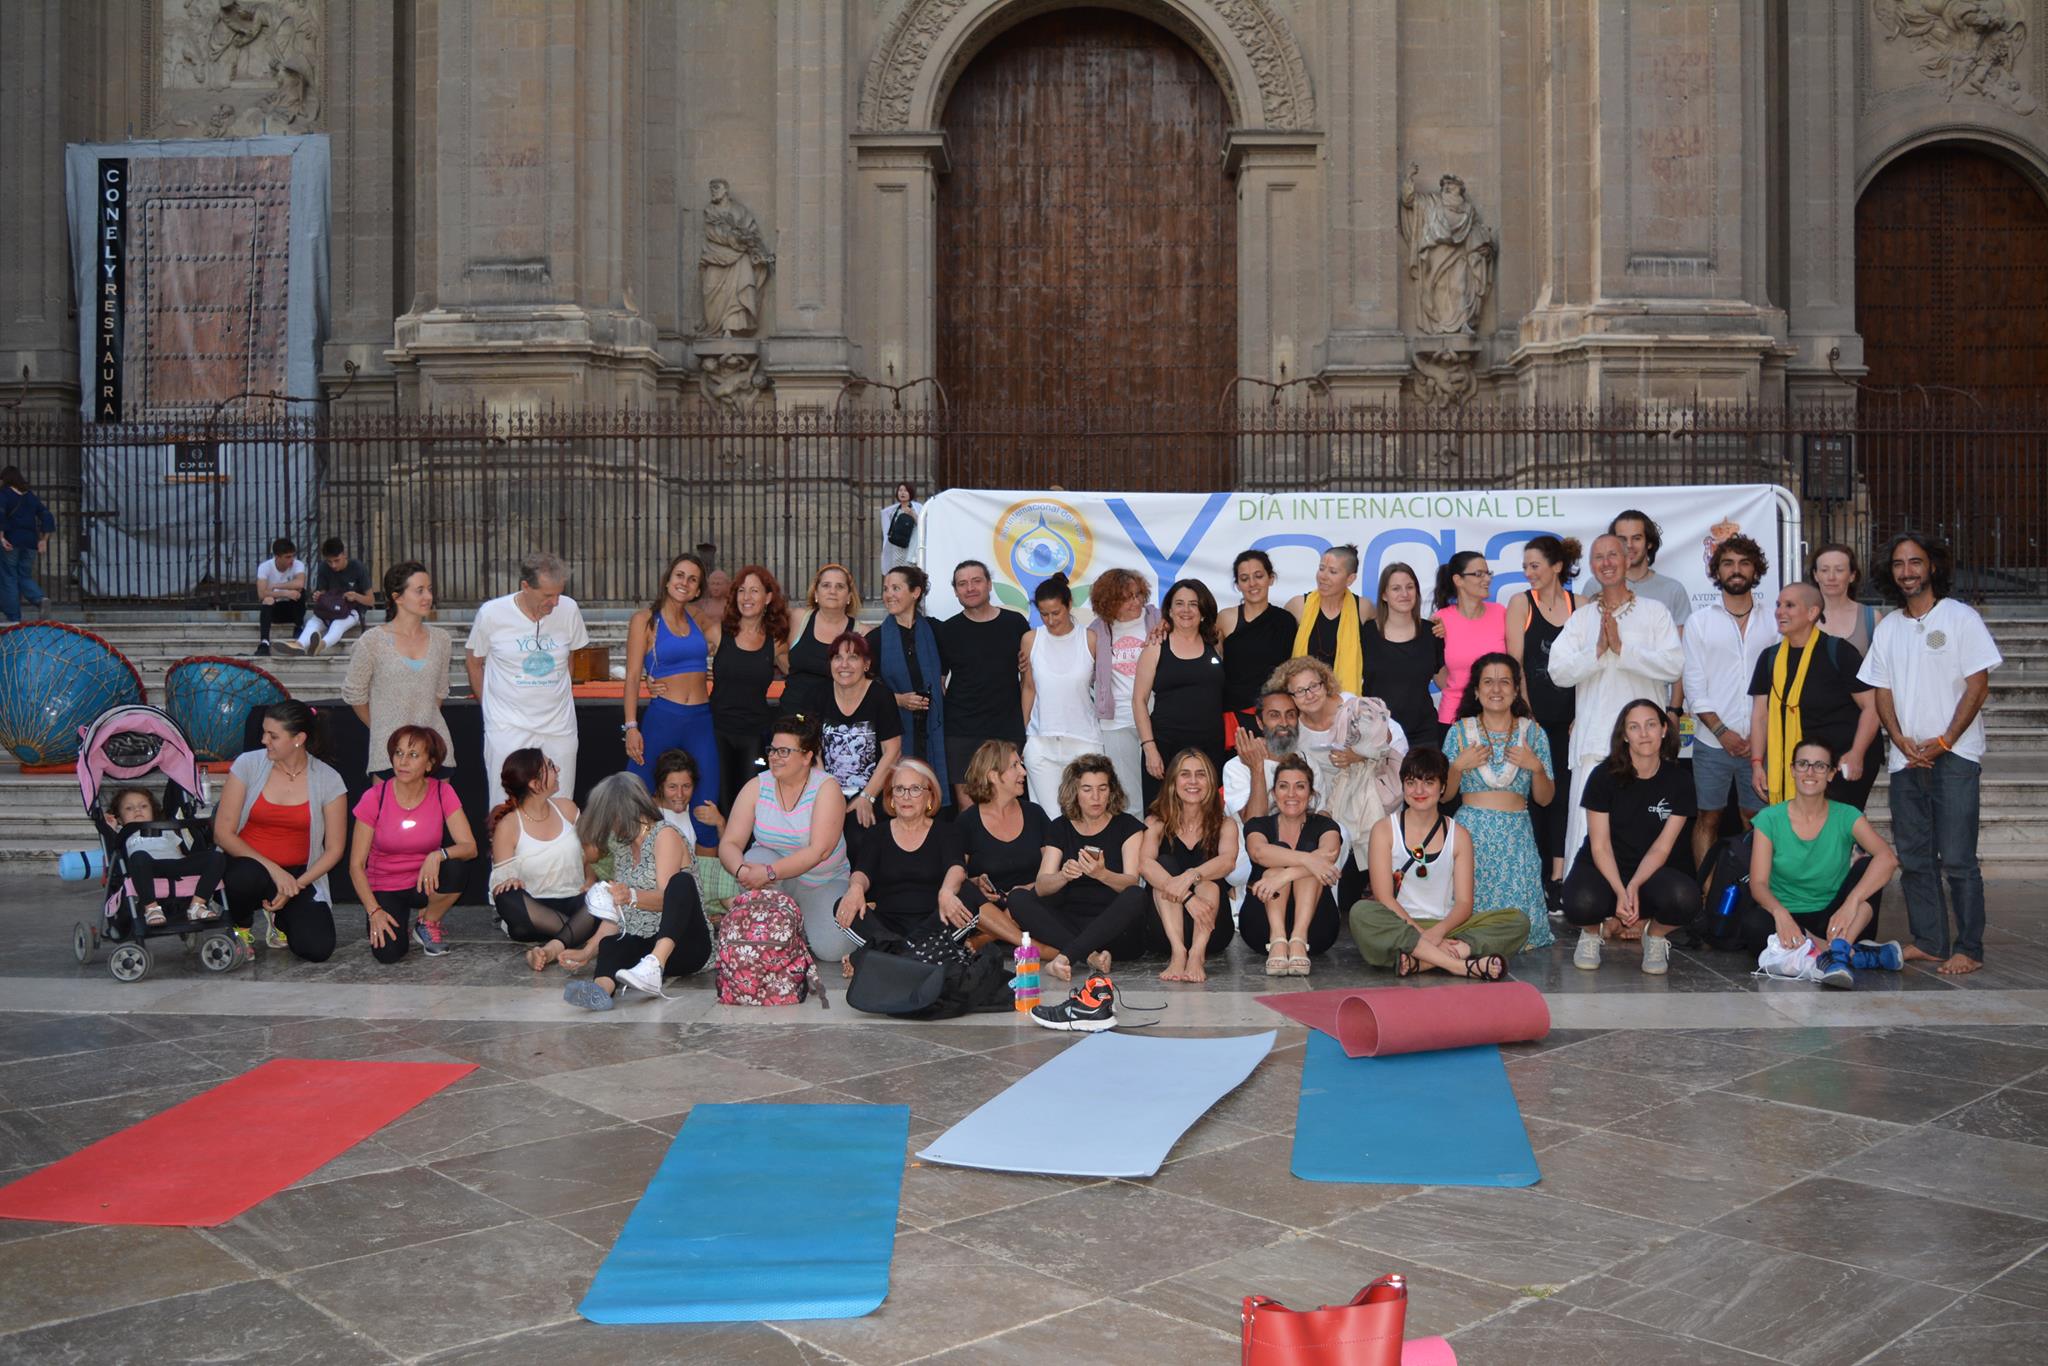 Día Internacional del Yoga 2019 en la Plaza de las Pasiegas